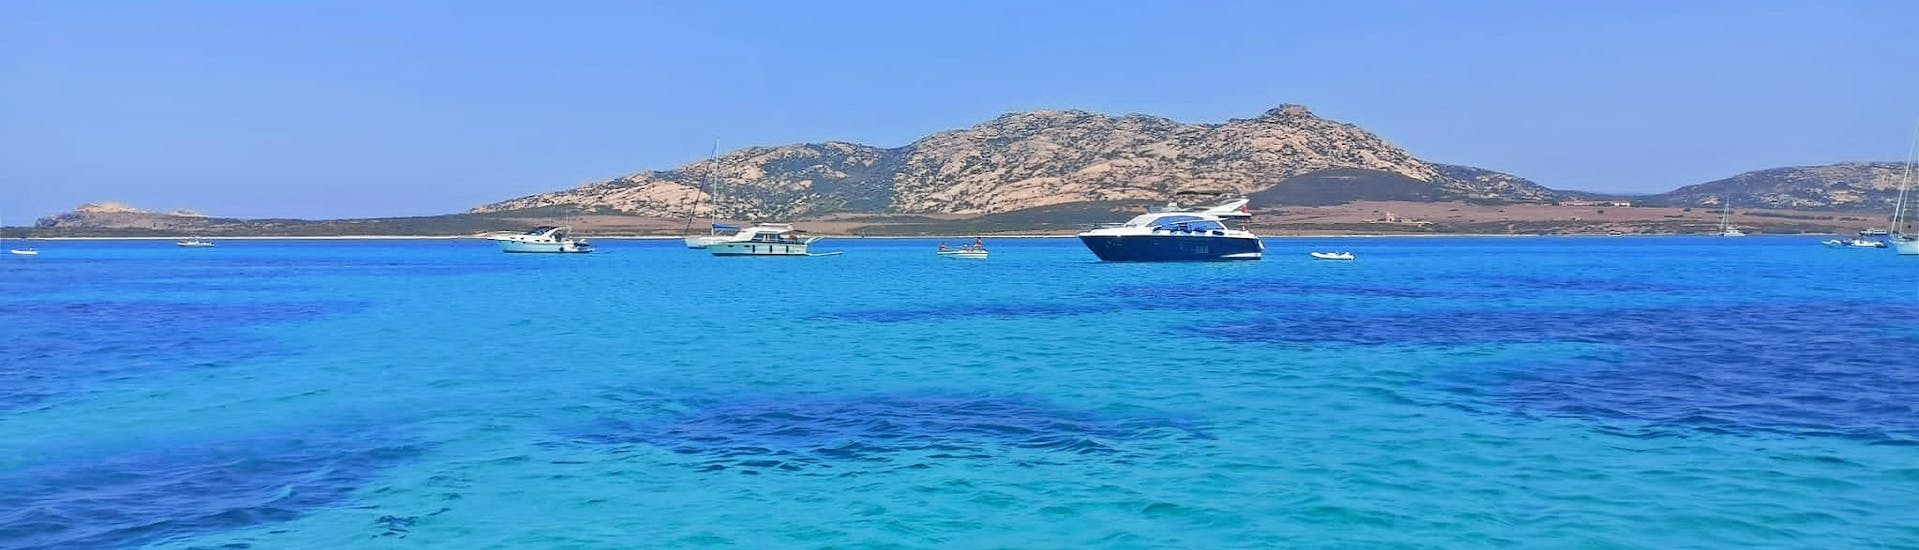 Imagen del paisaje que se puede admirar a bordo con Asinara's Latin Sails durante la excursión en velero al Parque Nacional de Asinara desde Stintino con almuerzo.